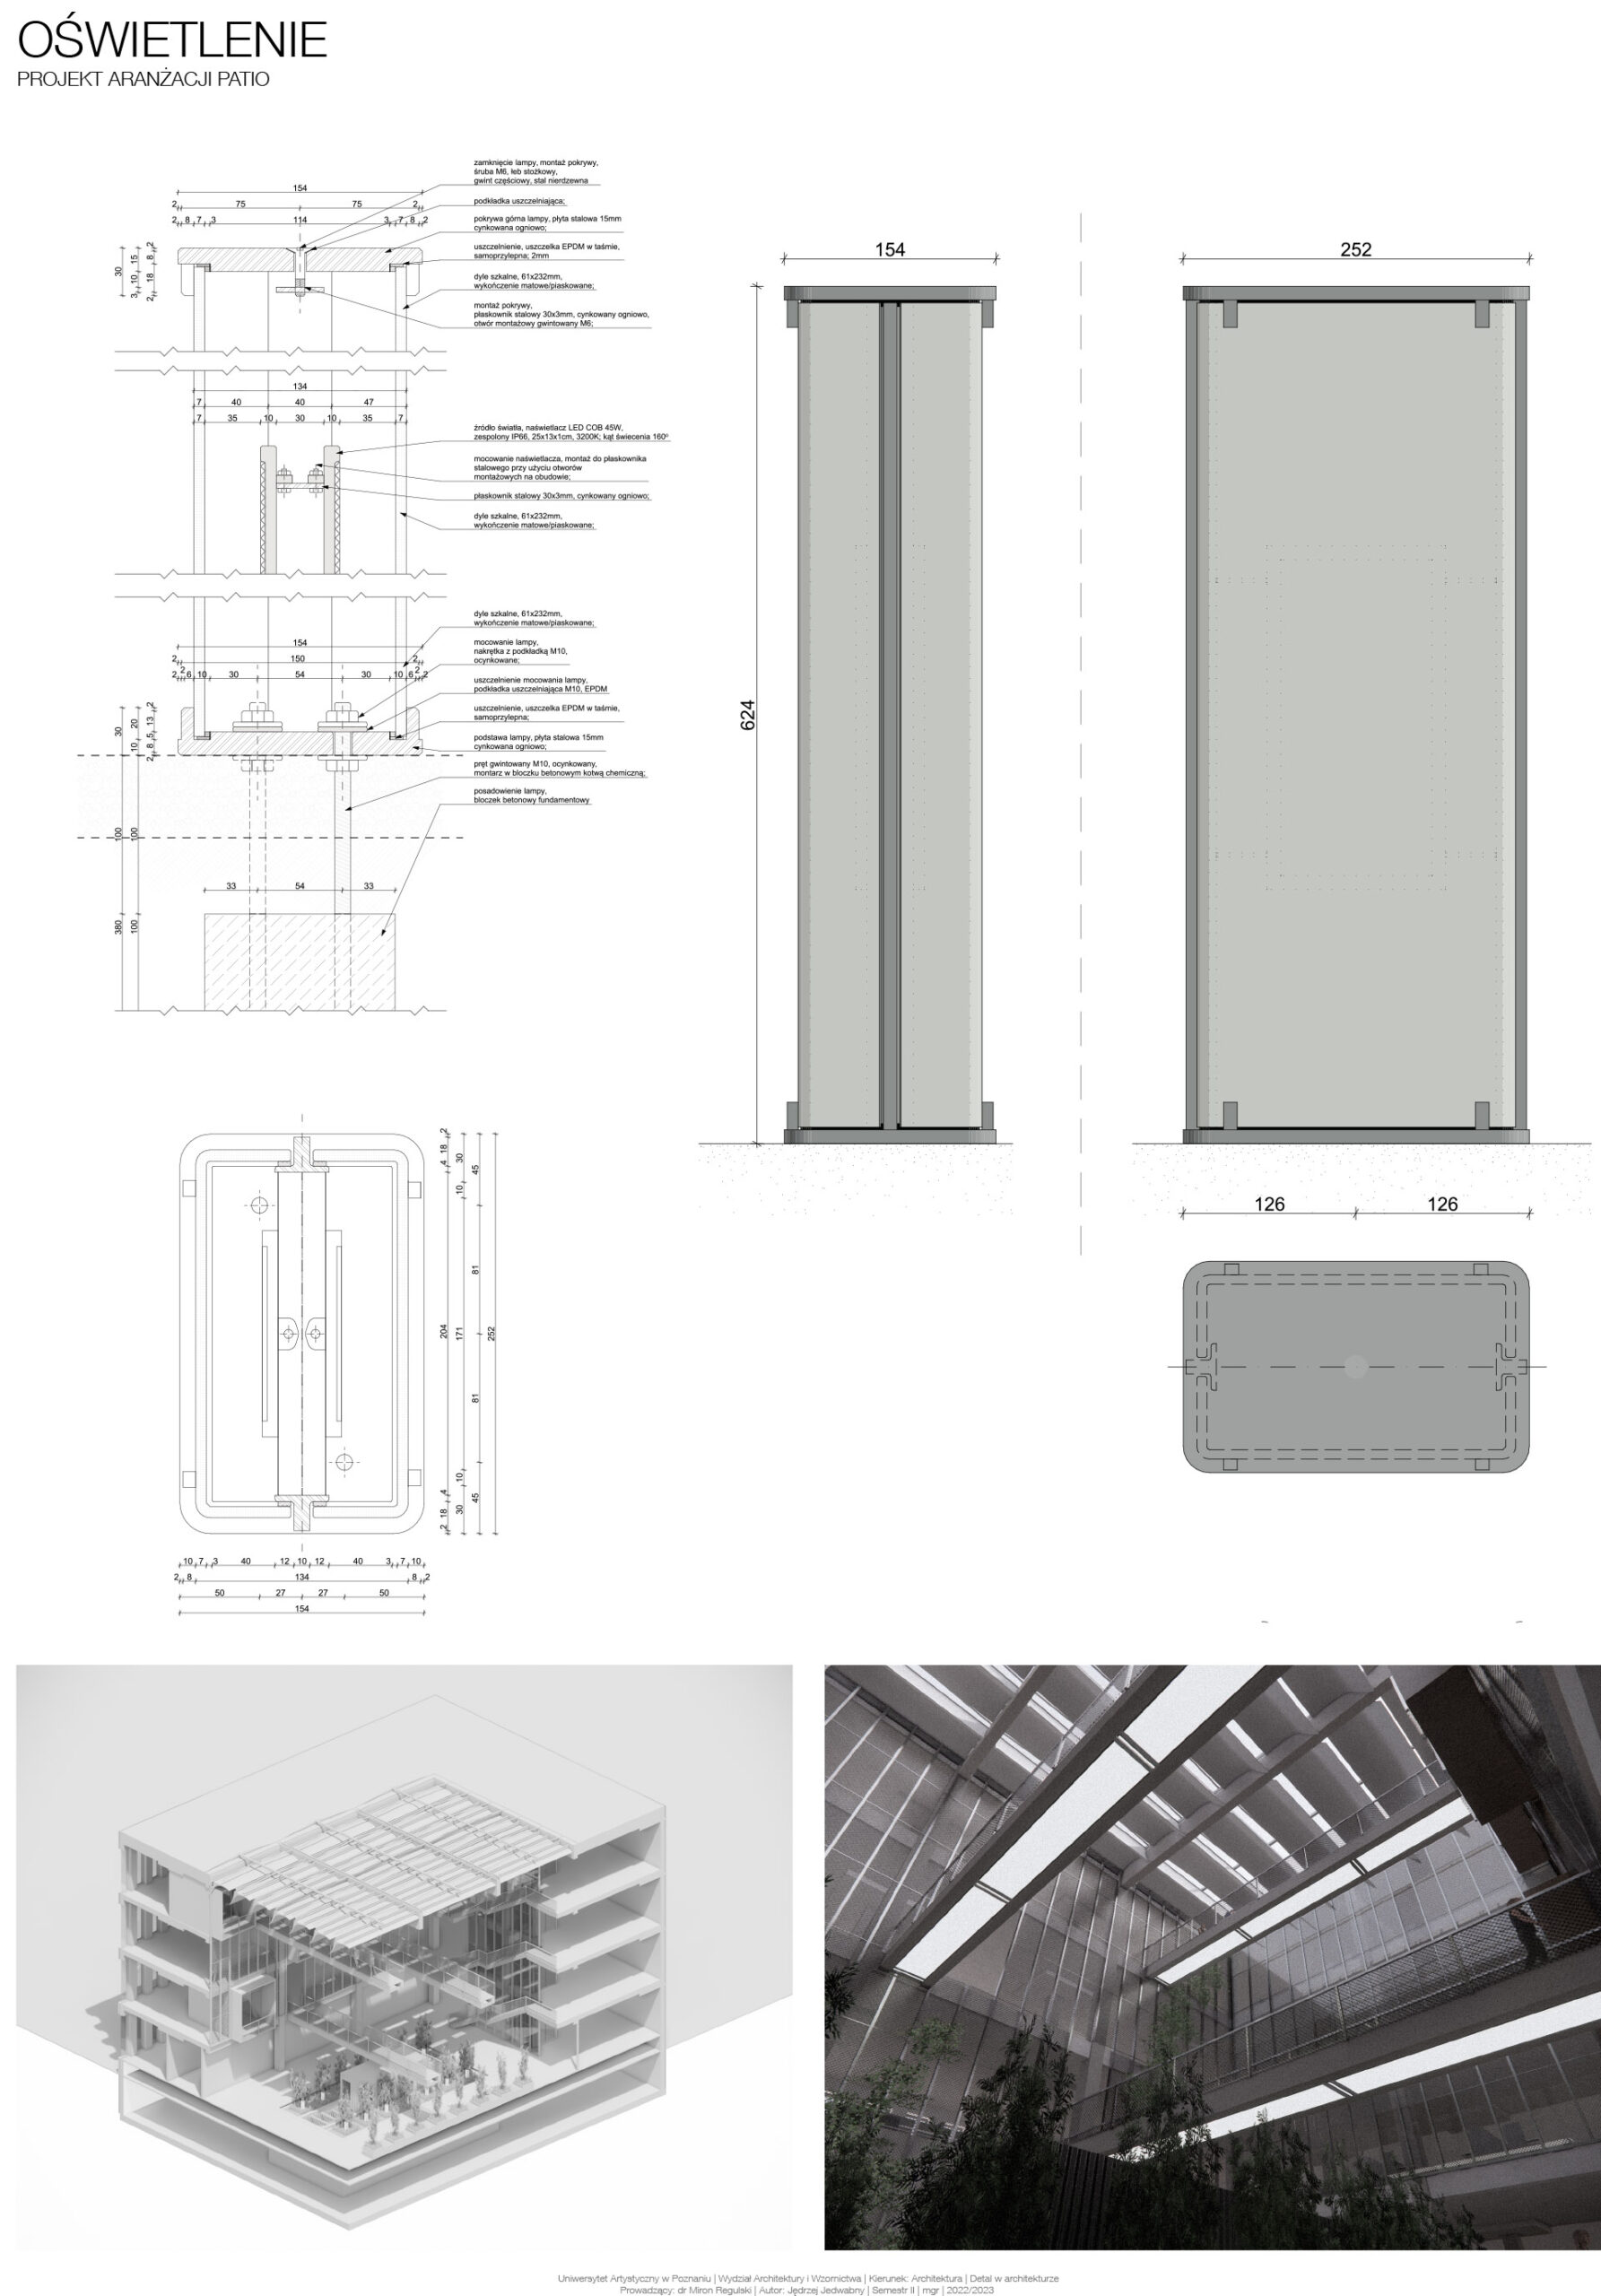 Dolna lewa część: wizualizacja aksonometryczna - przekrój budynku w miejscu patio.Dolna prawa część: wizualizacja projektowanego detalu w przestrzeni patio.Górna część: po lewej szczegółowy rysunek techniczny z opisami, po prawej wizualizacja zaprojektowanej latarni.